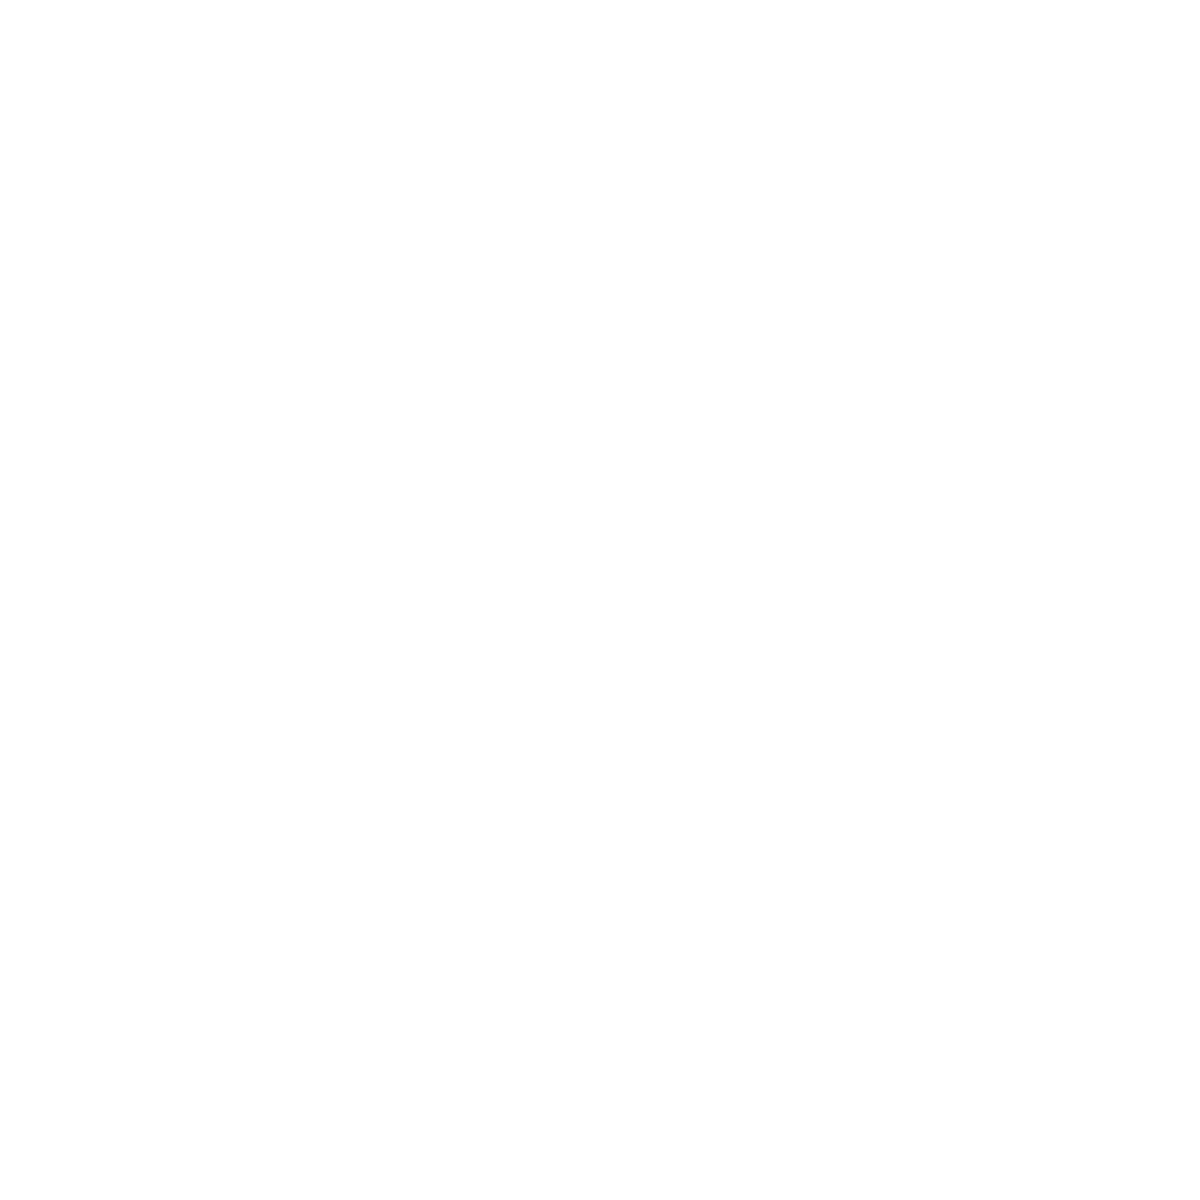 Pictogramme d'un portable avec un logo de data représentant l'optimmisation de téléphone